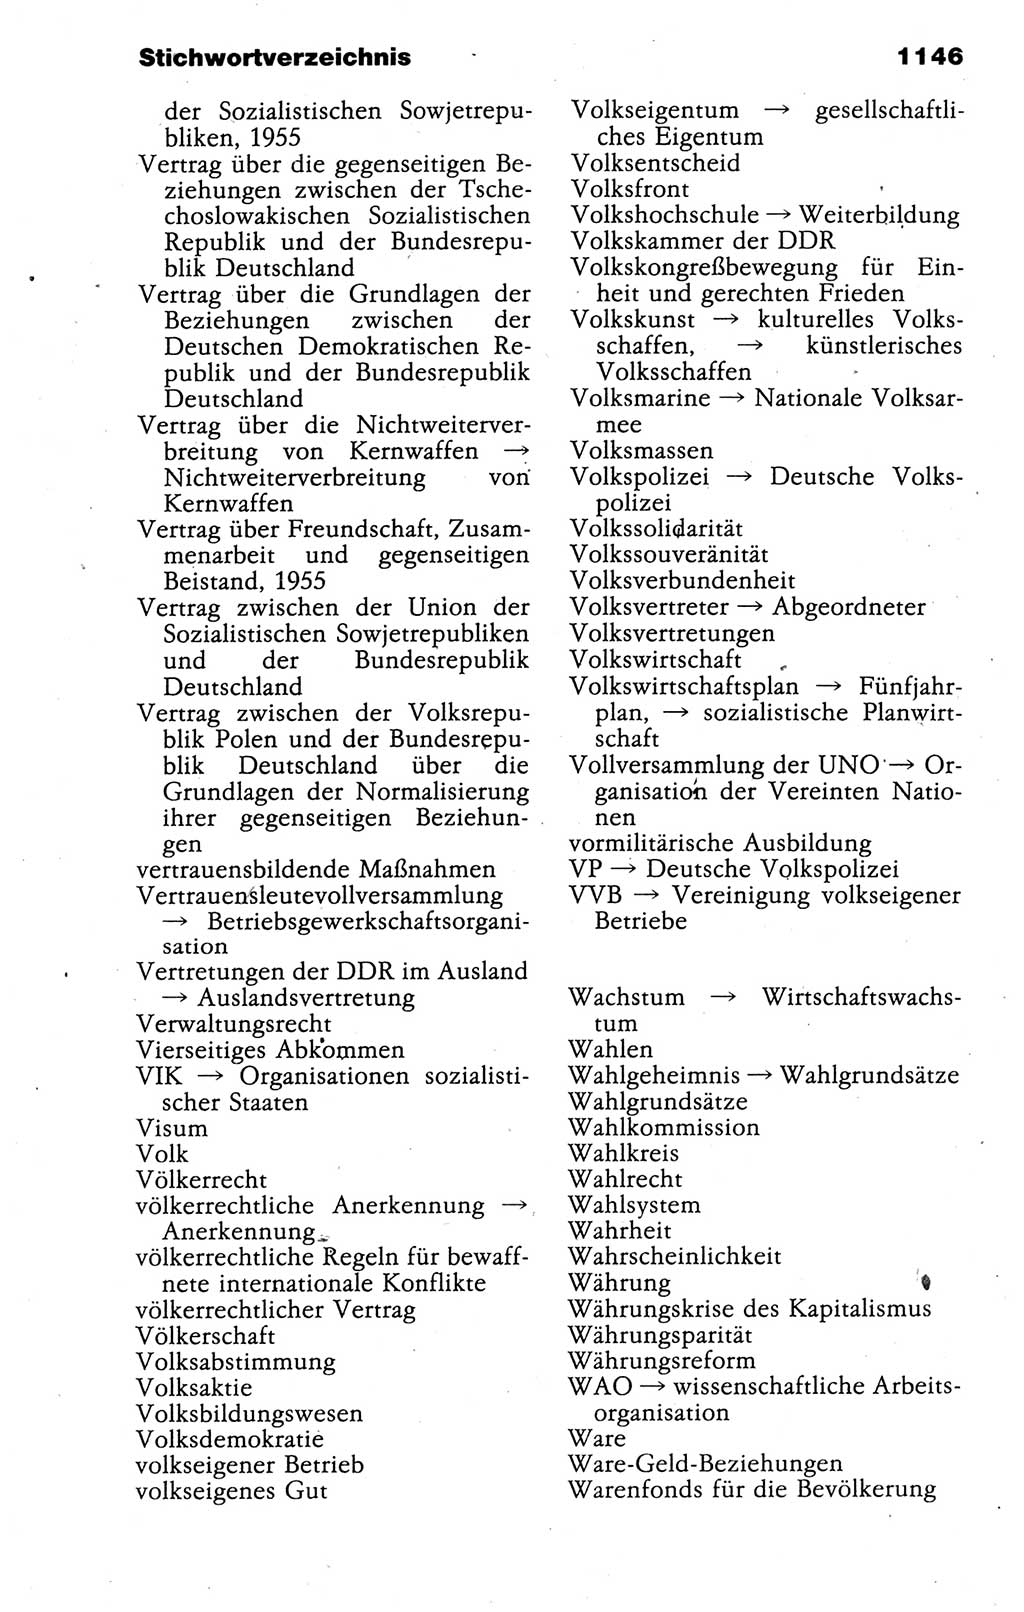 Kleines politisches Wörterbuch [Deutsche Demokratische Republik (DDR)] 1988, Seite 1146 (Kl. pol. Wb. DDR 1988, S. 1146)